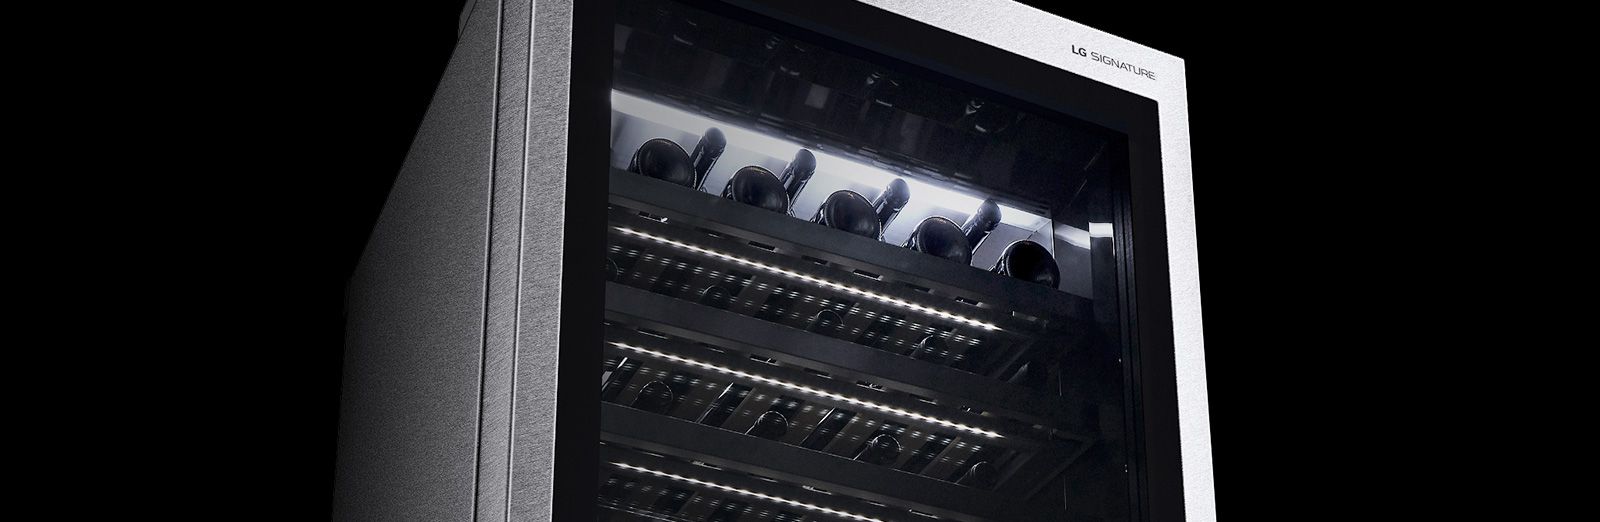 Увеличенное изображение подсветки полки винного шкафа LG SIGNATURE.